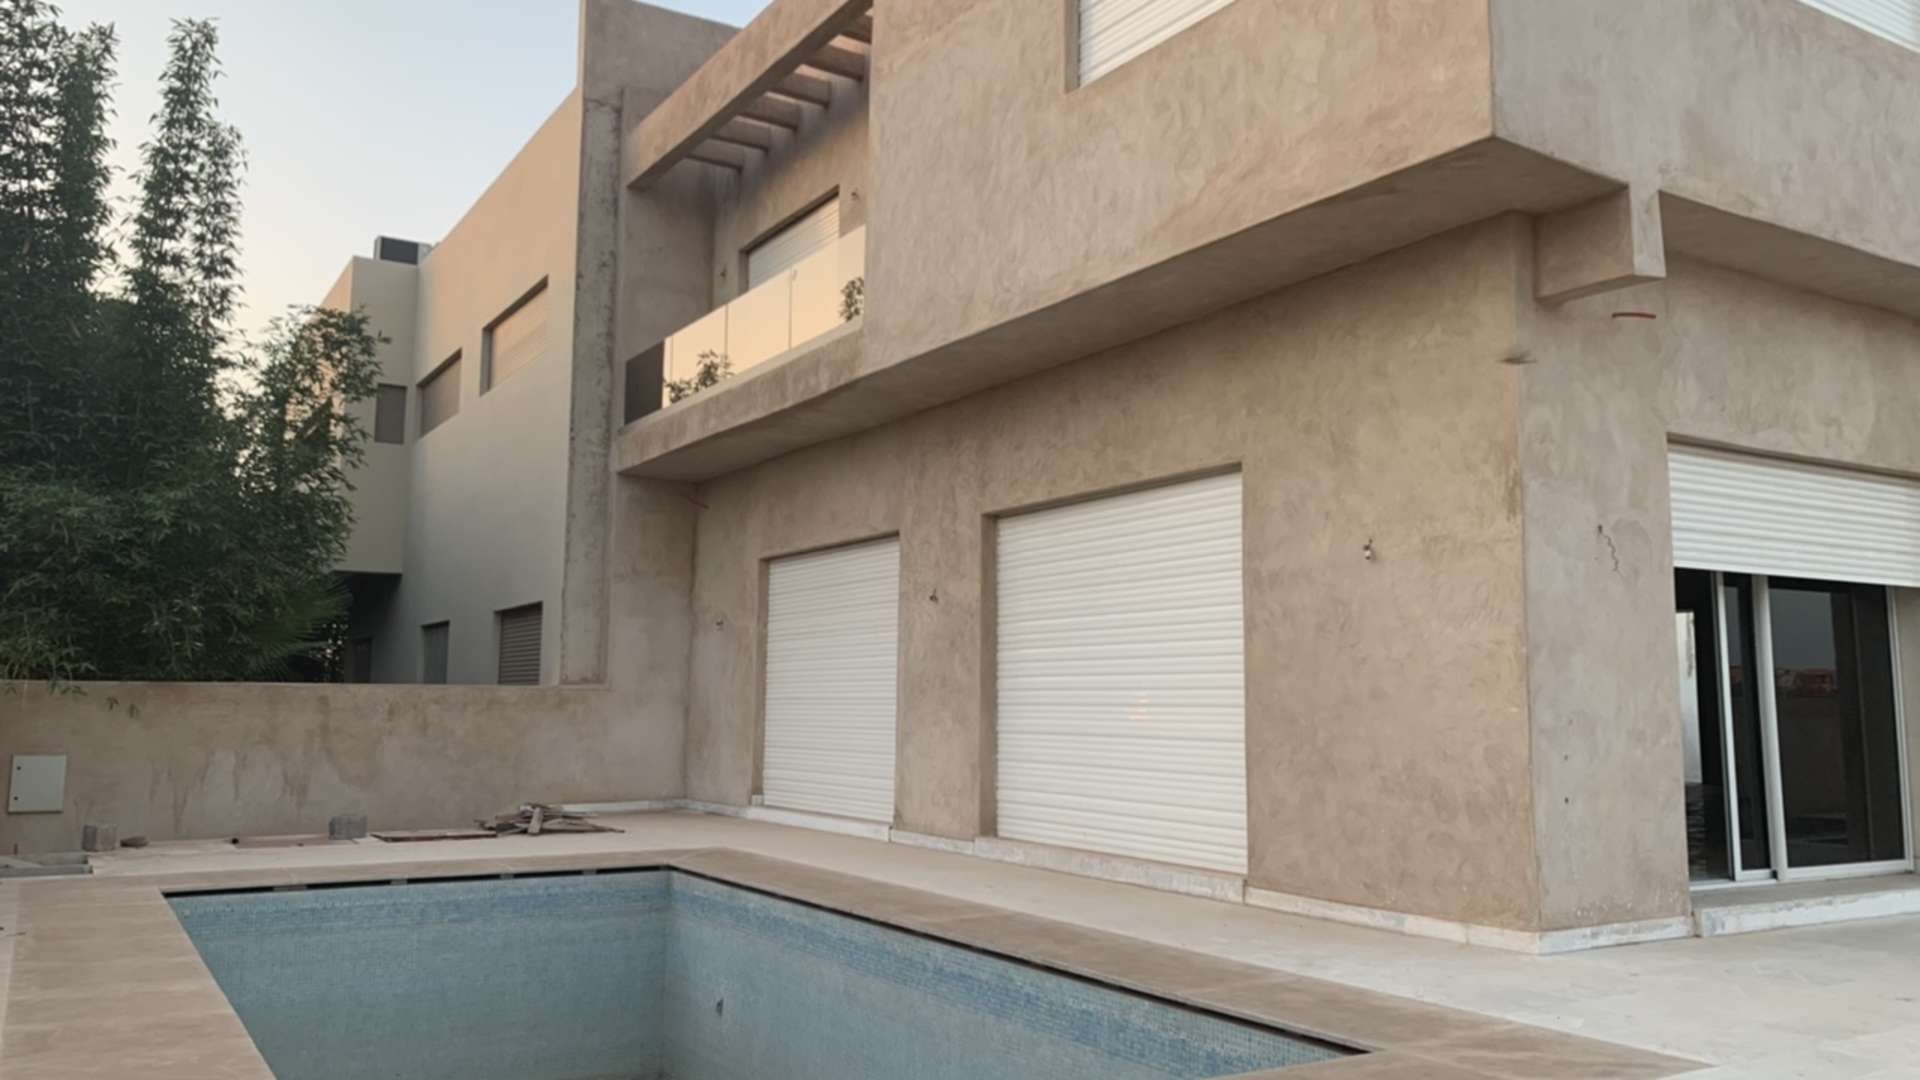 Vente,Villa,Villa neuve à vendre à Av. Med6 avec 4 chambres agréables,Marrakech,Av. Mohamed VI